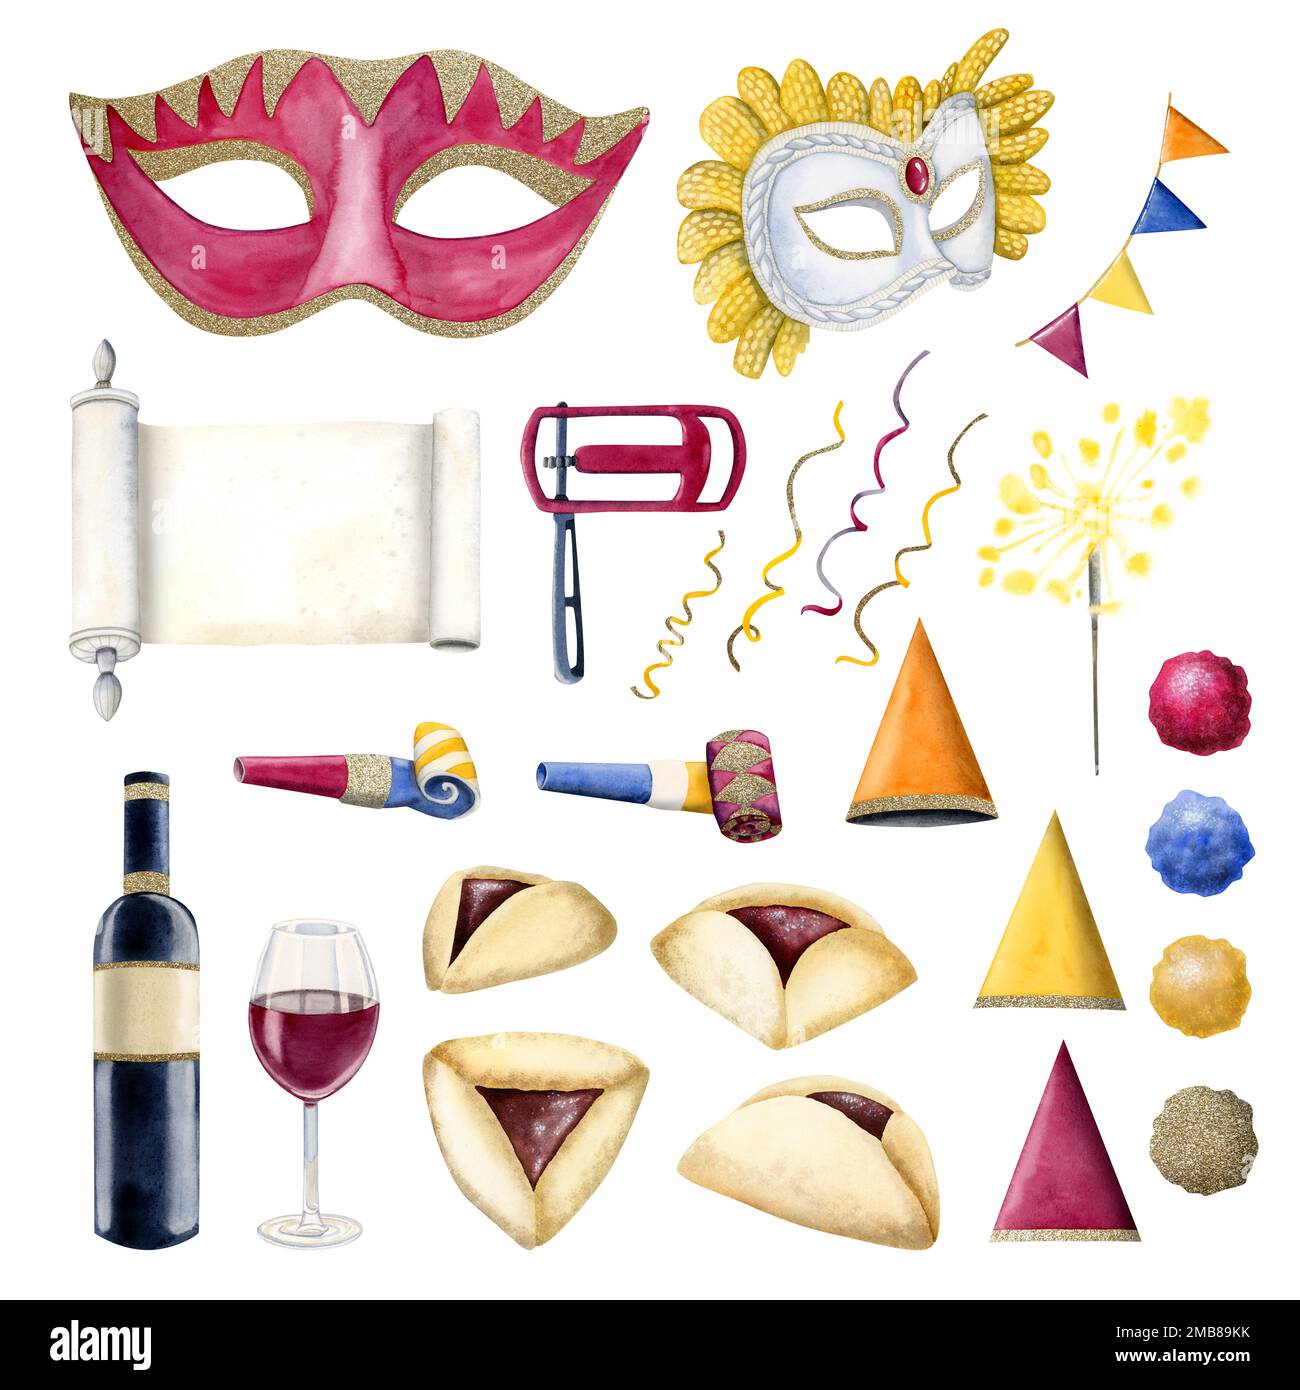 Aquarelle Purim-Symbole für jüdische Feiertagspartys: Masken, Klapperschlangen, Hamantaschen, Esther-Schriftrolle, koscherer Wein Stockfoto